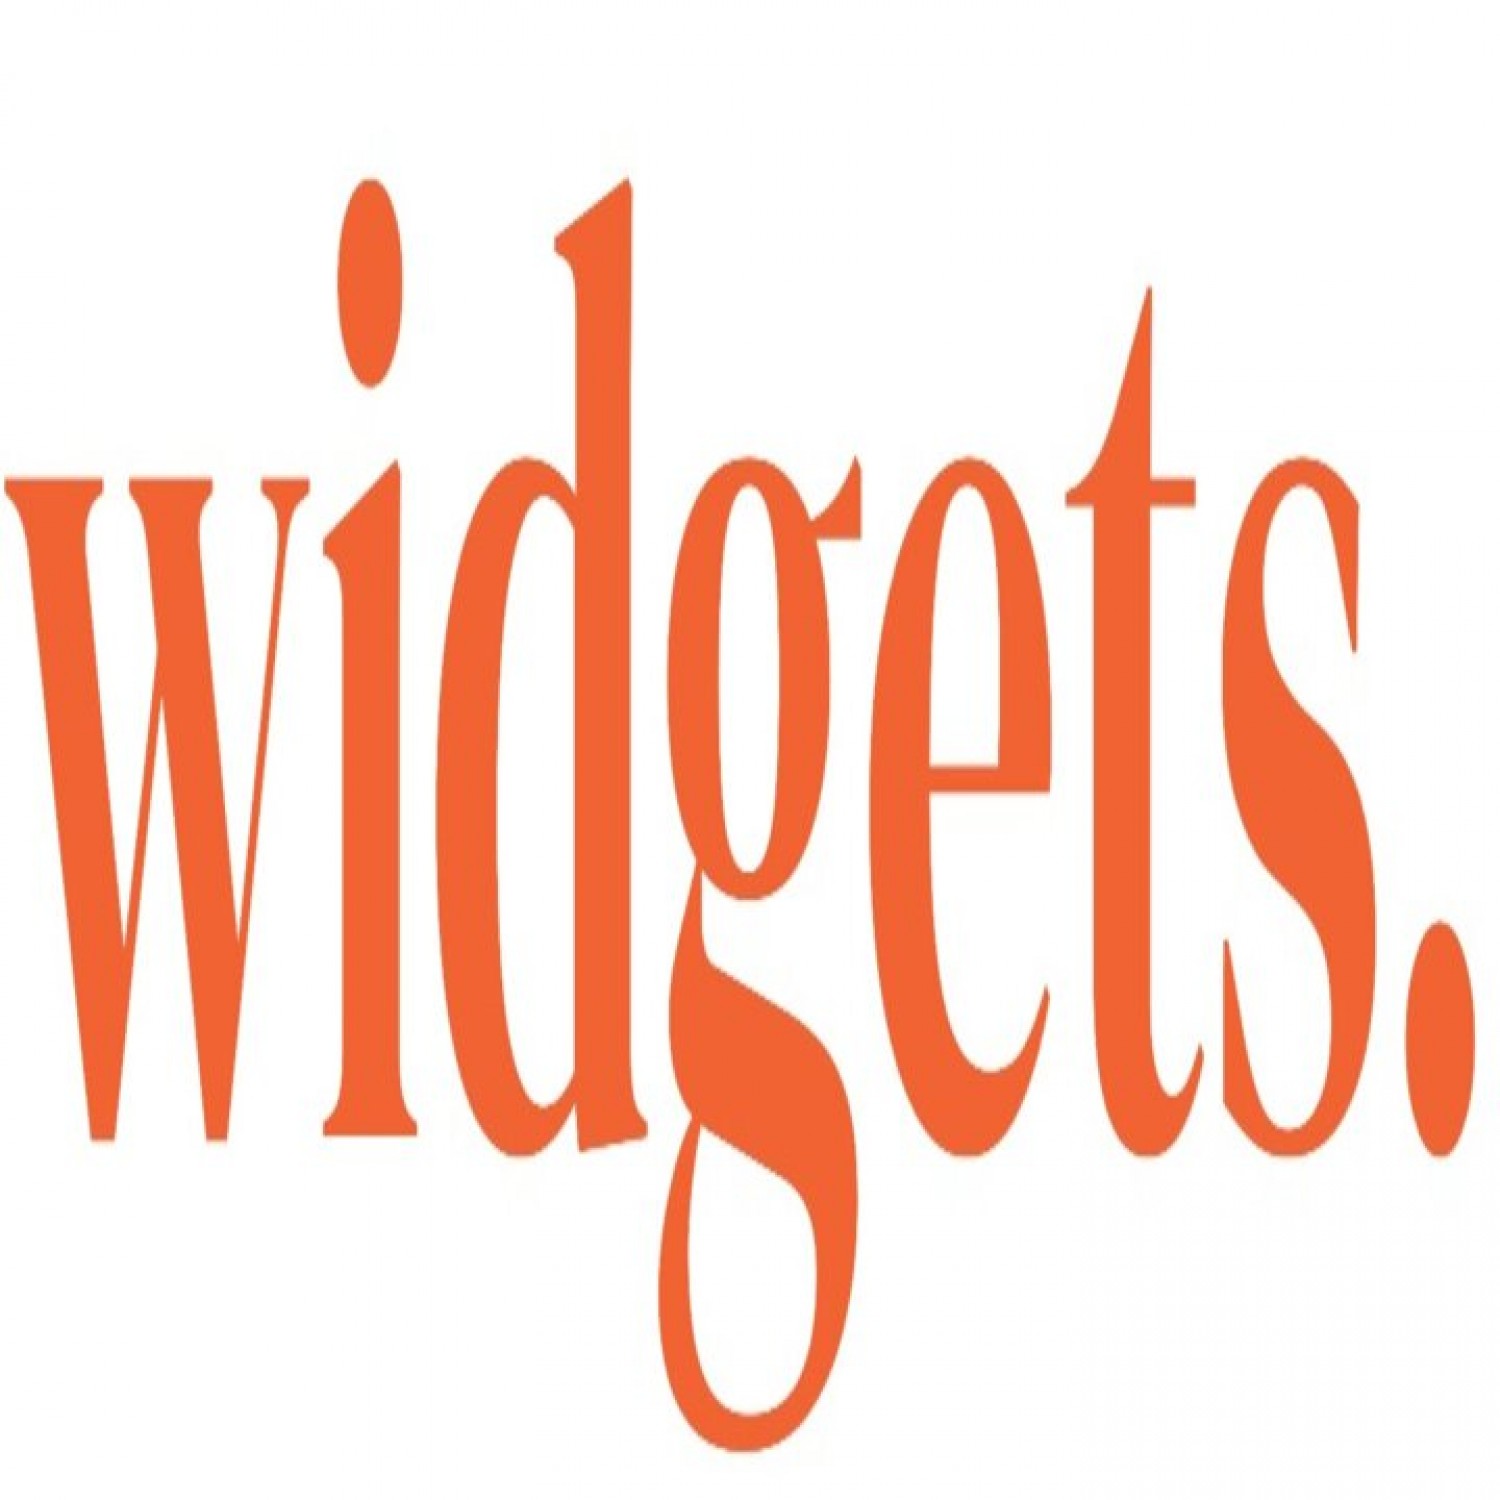 Widgets Limited: Digital Marketing Agency